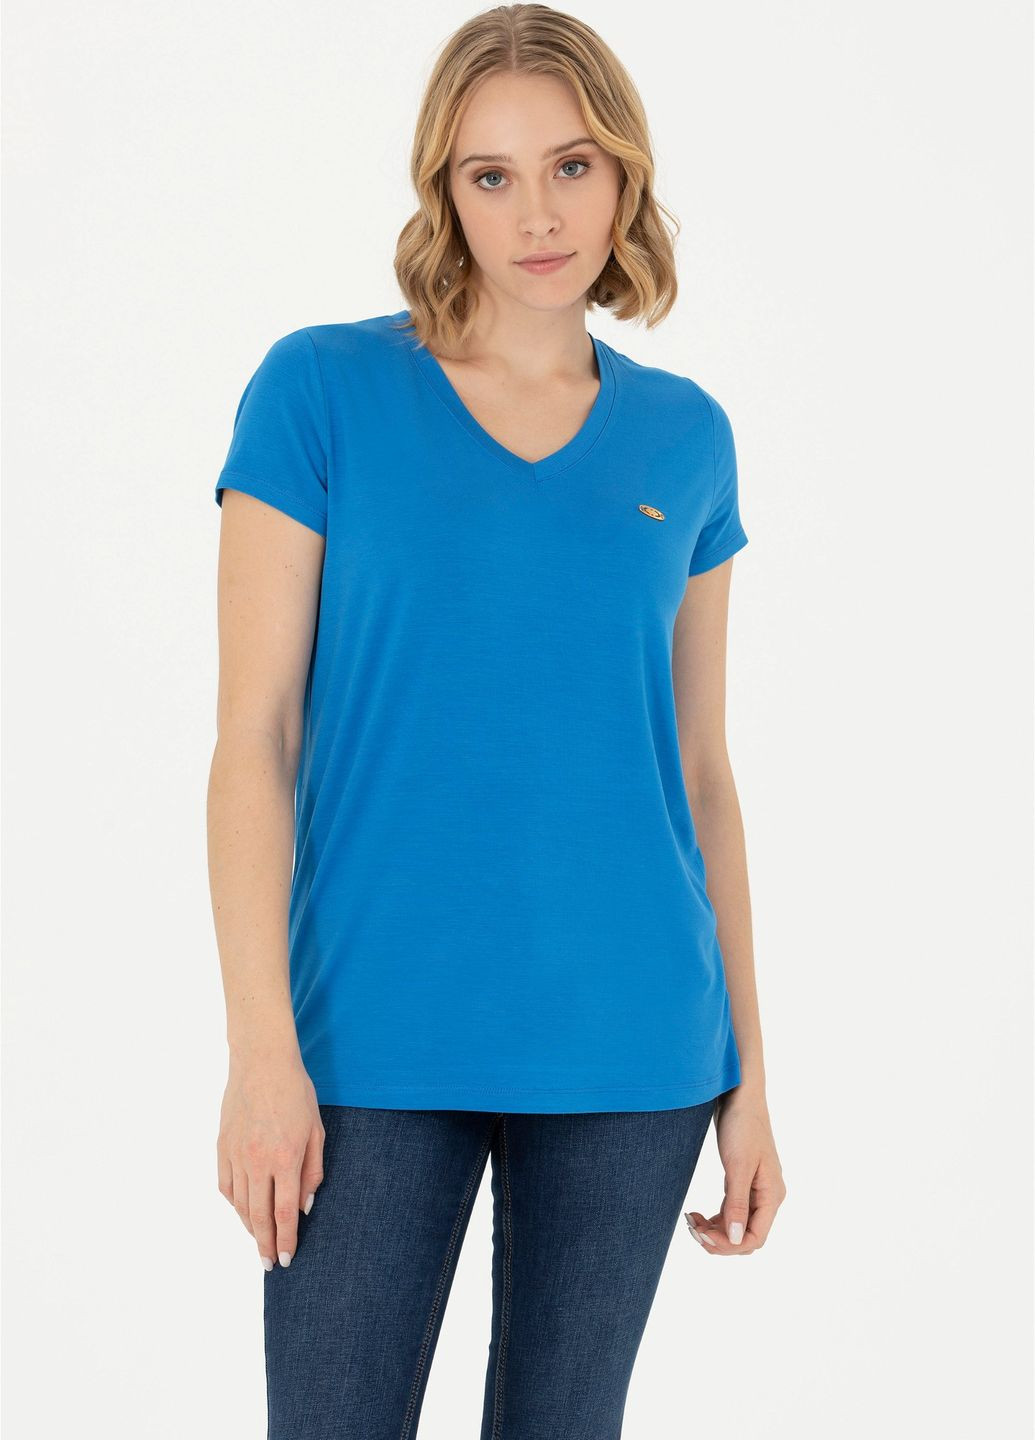 Синяя женская футболка-футболка u.s.polo assn женская U.S. Polo Assn.